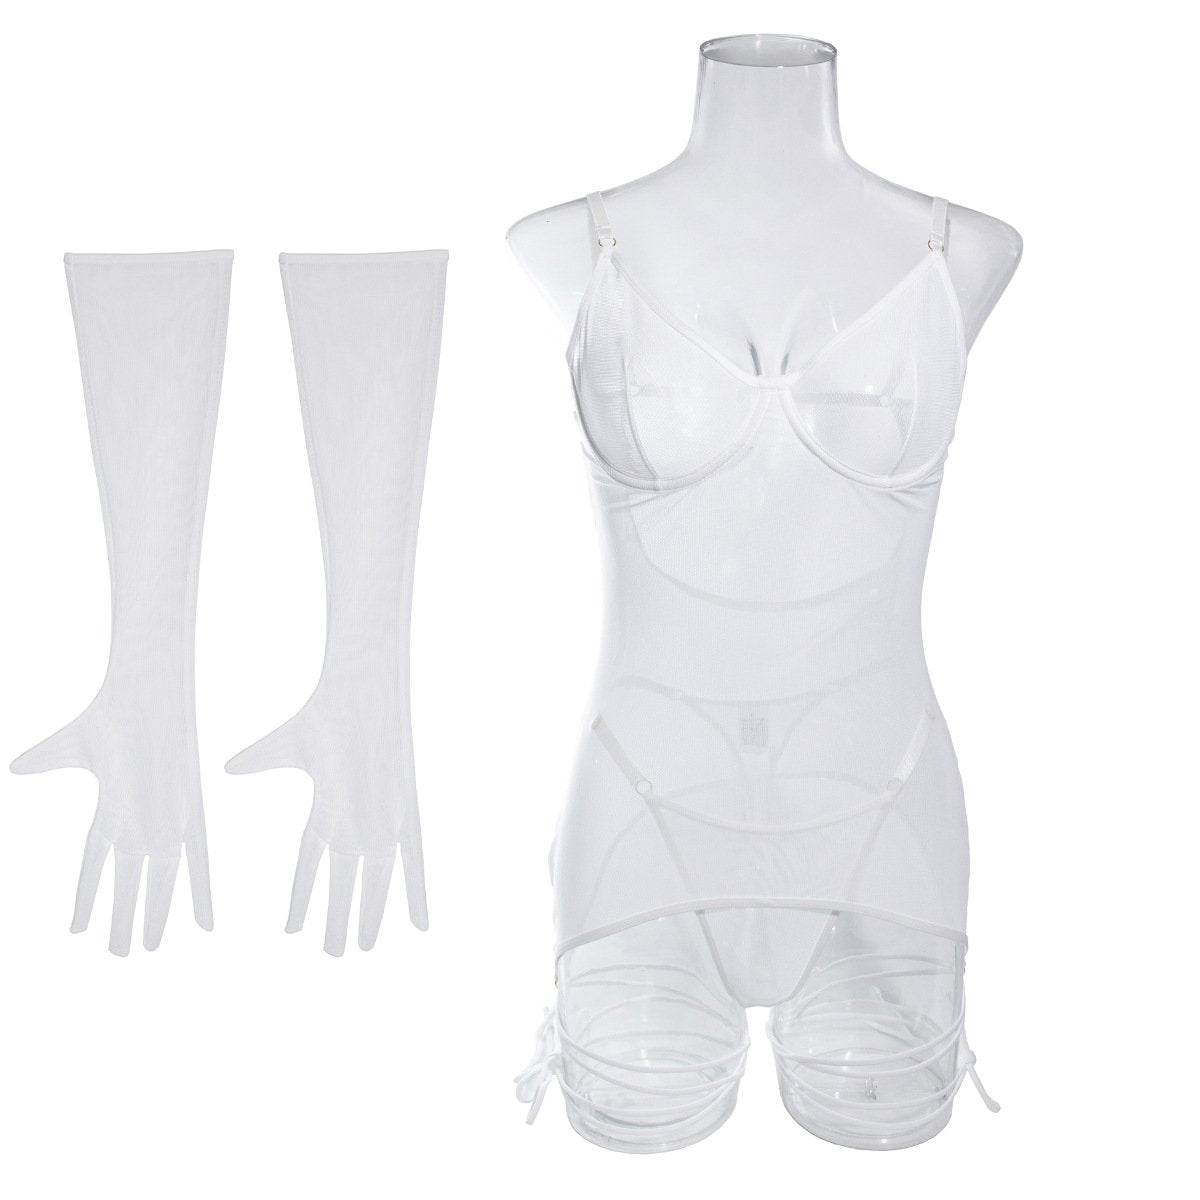 Sheer mesh gloves harness lingerie set